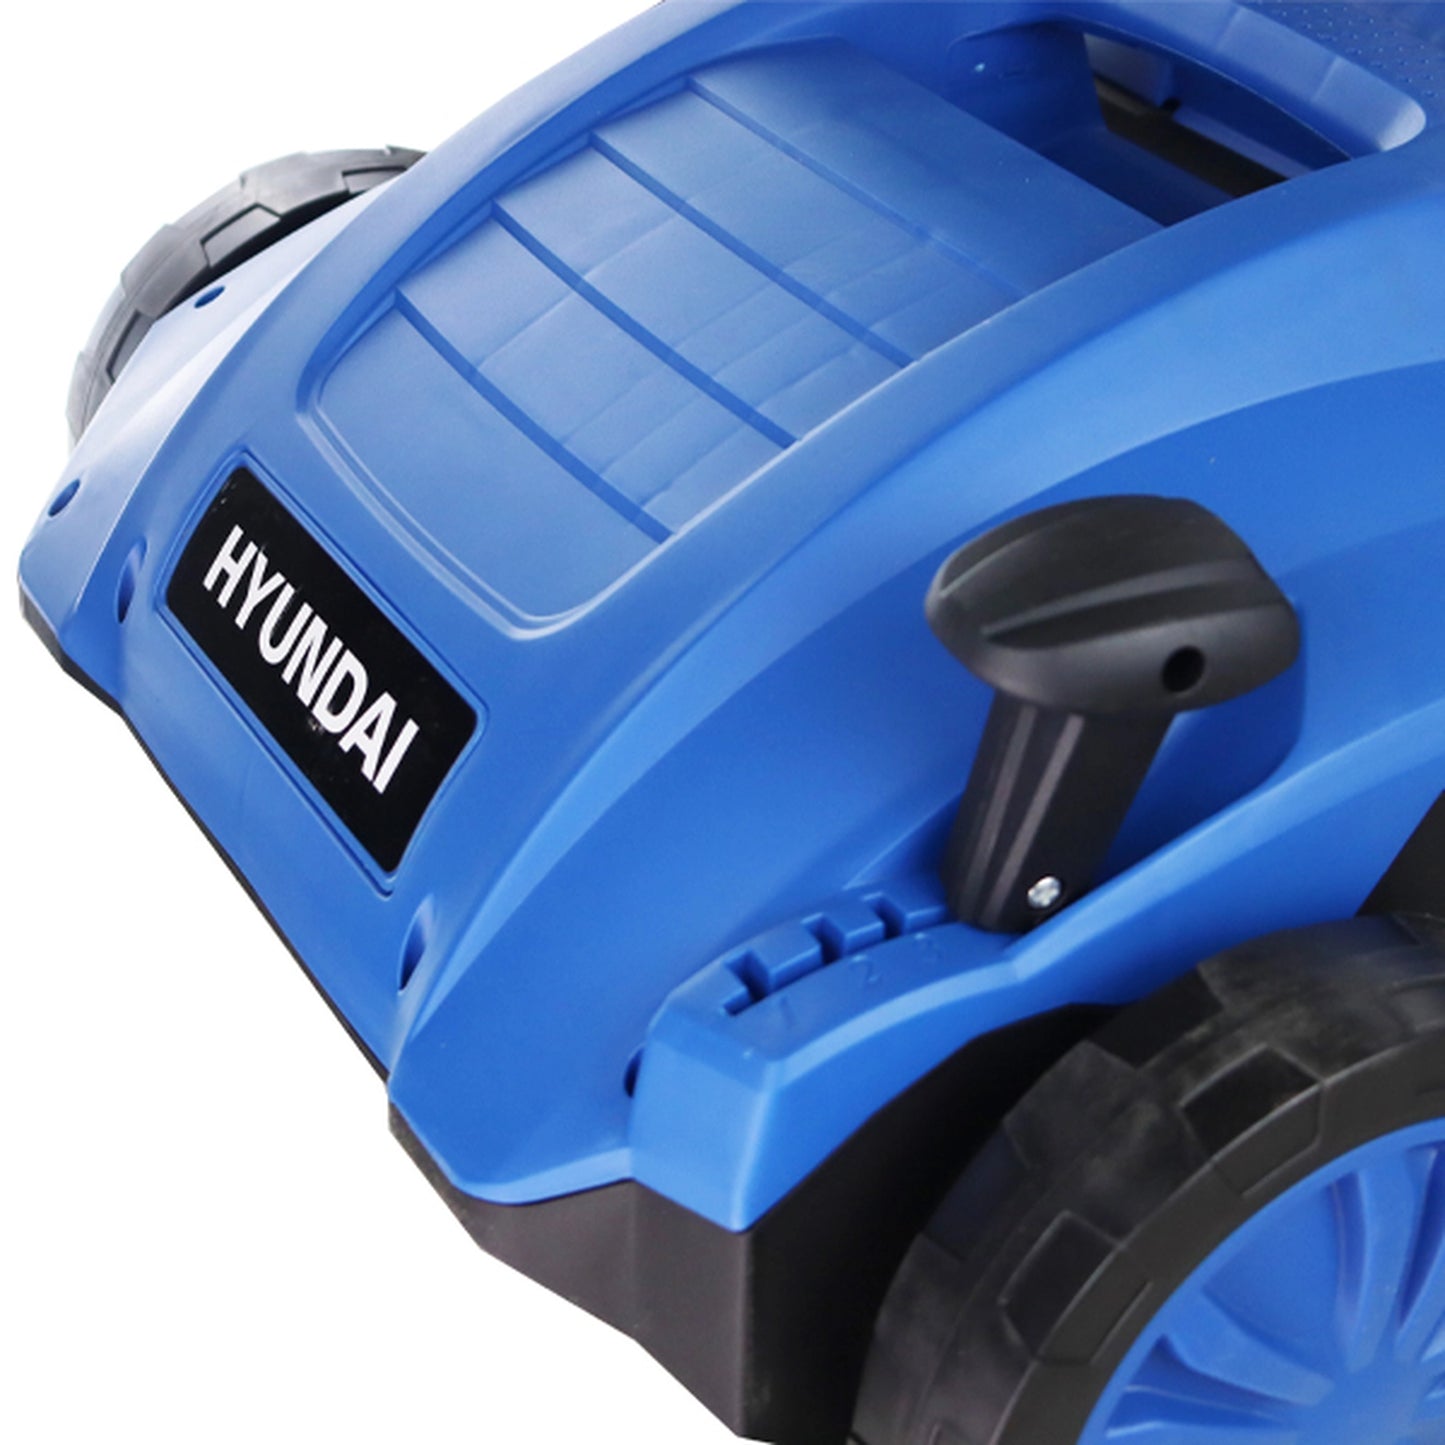 Hyundai HYSC1532E Electric Lawn Scarifier, Aerator, Rake